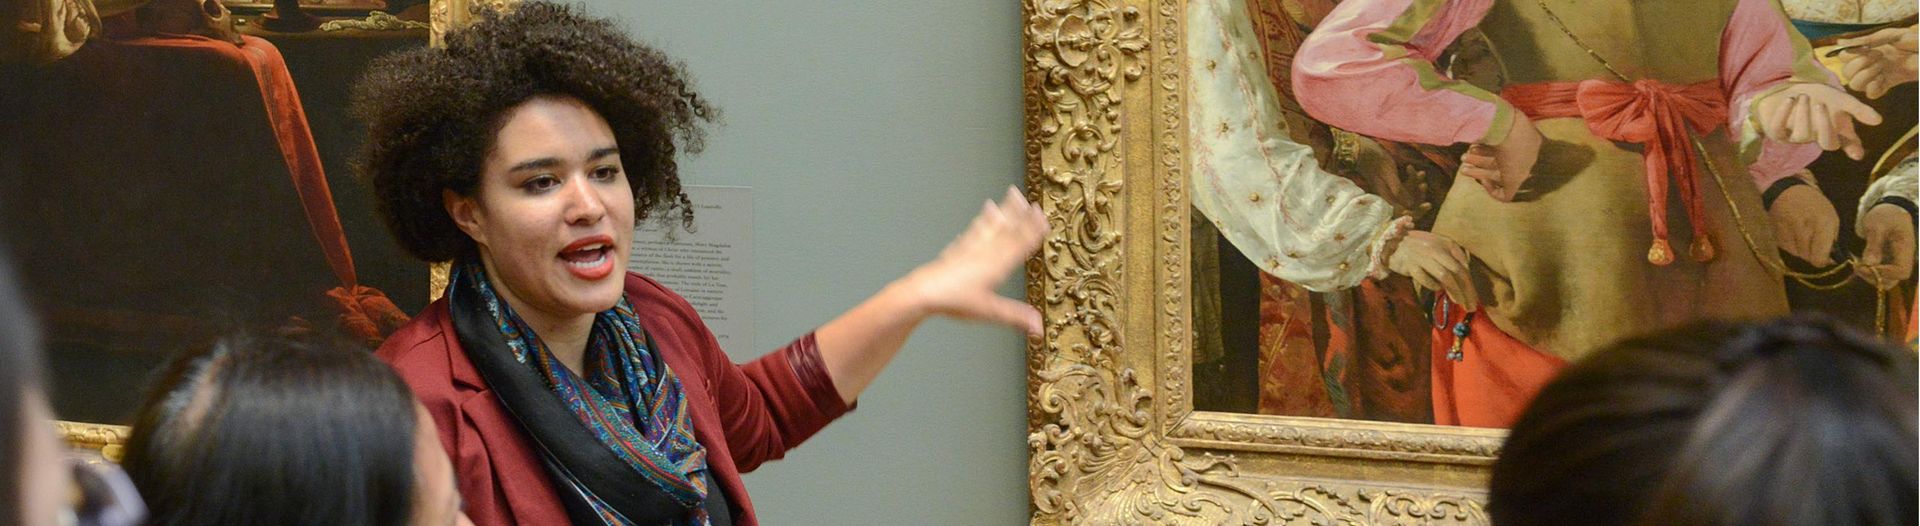 Educator talks to group in European Paintings gallery